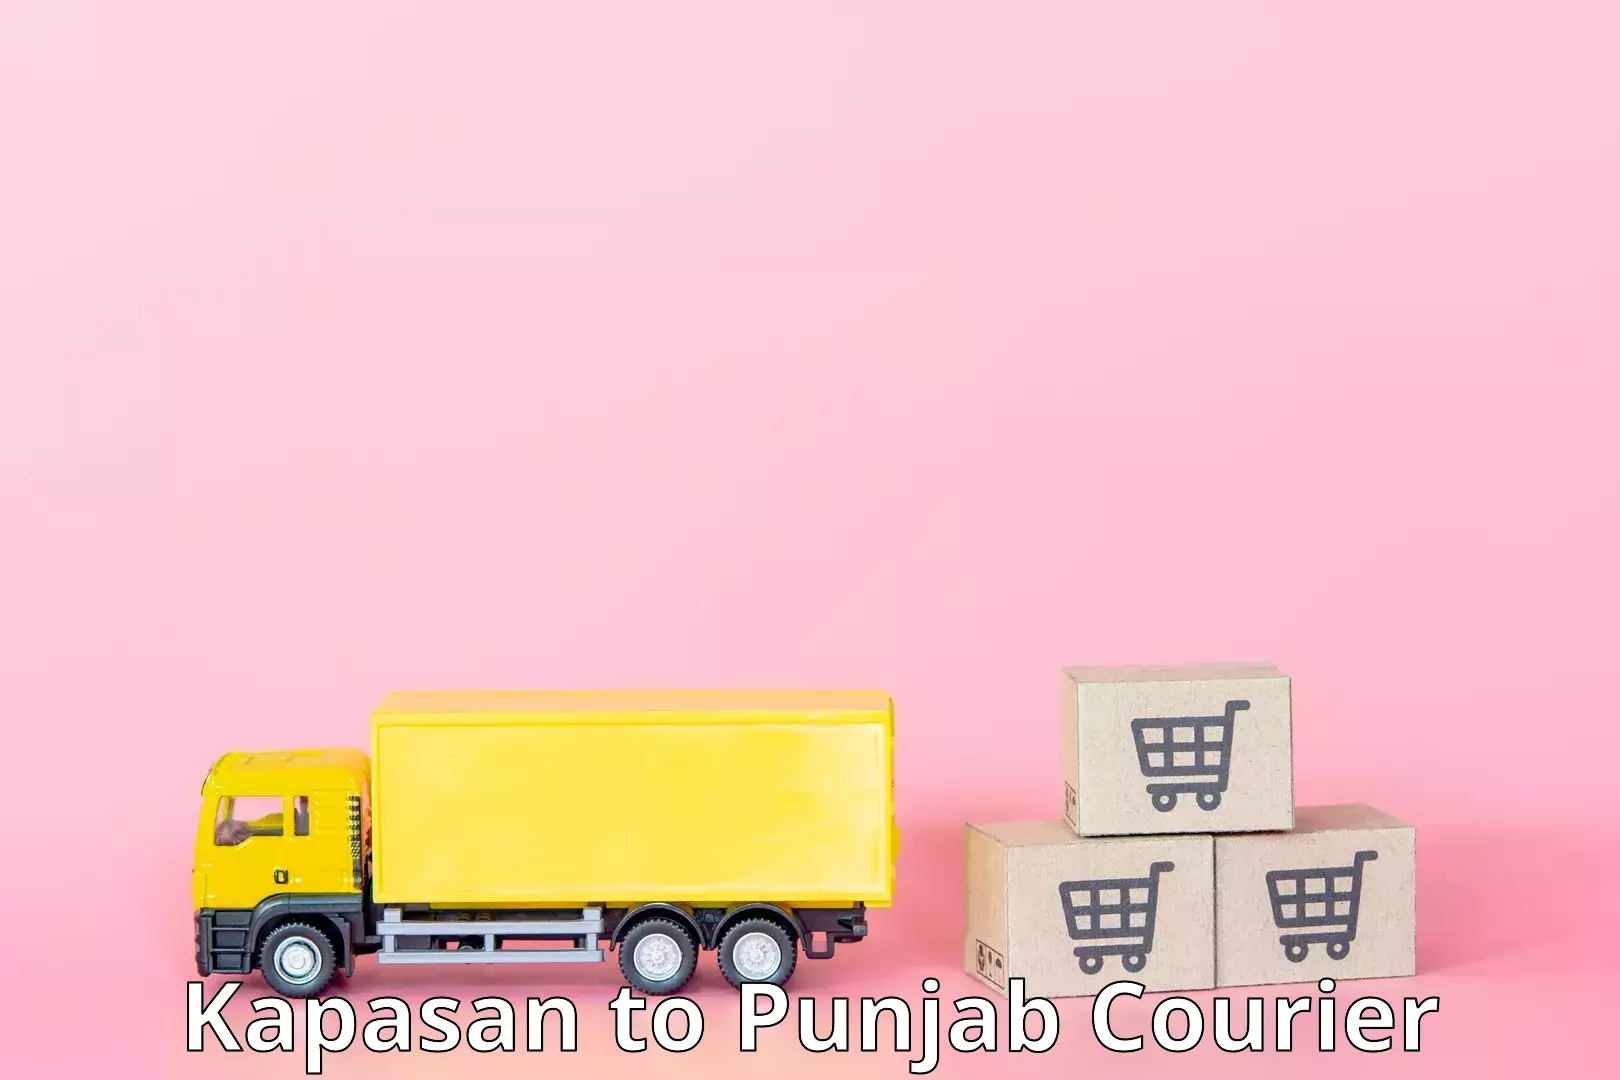 Courier service comparison Kapasan to Punjab